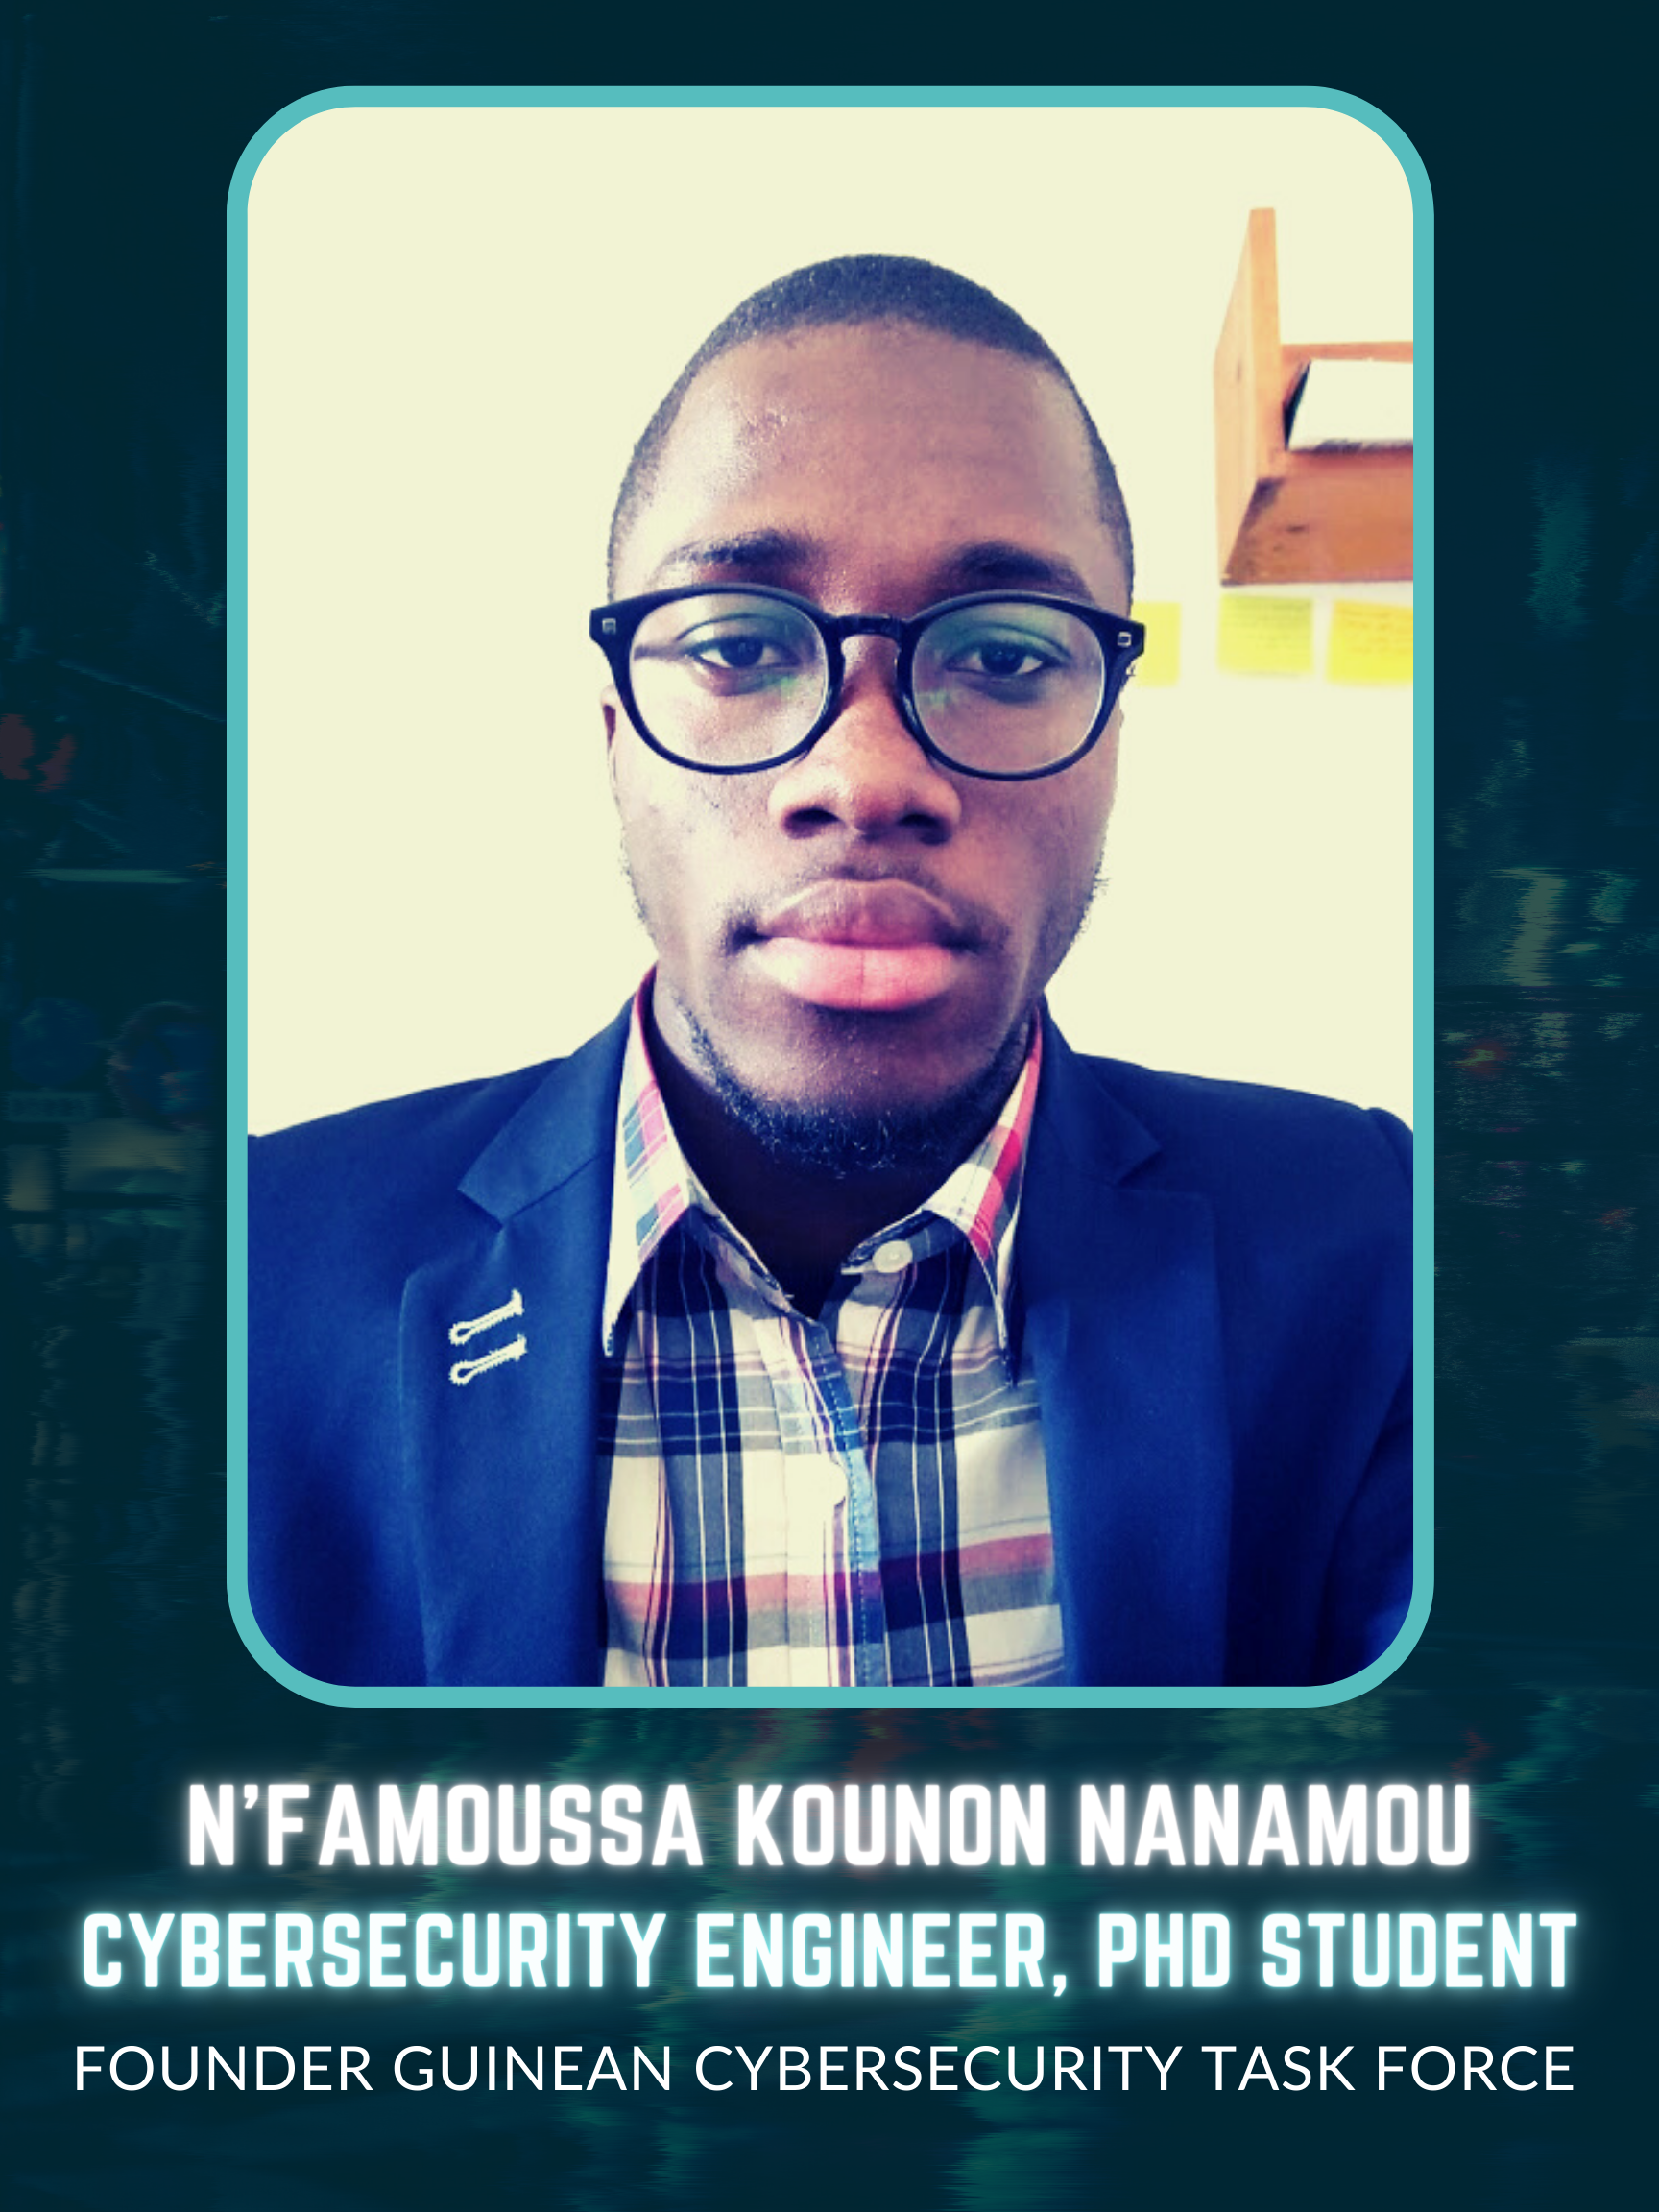 N’Famoussa Kounon Nanamou